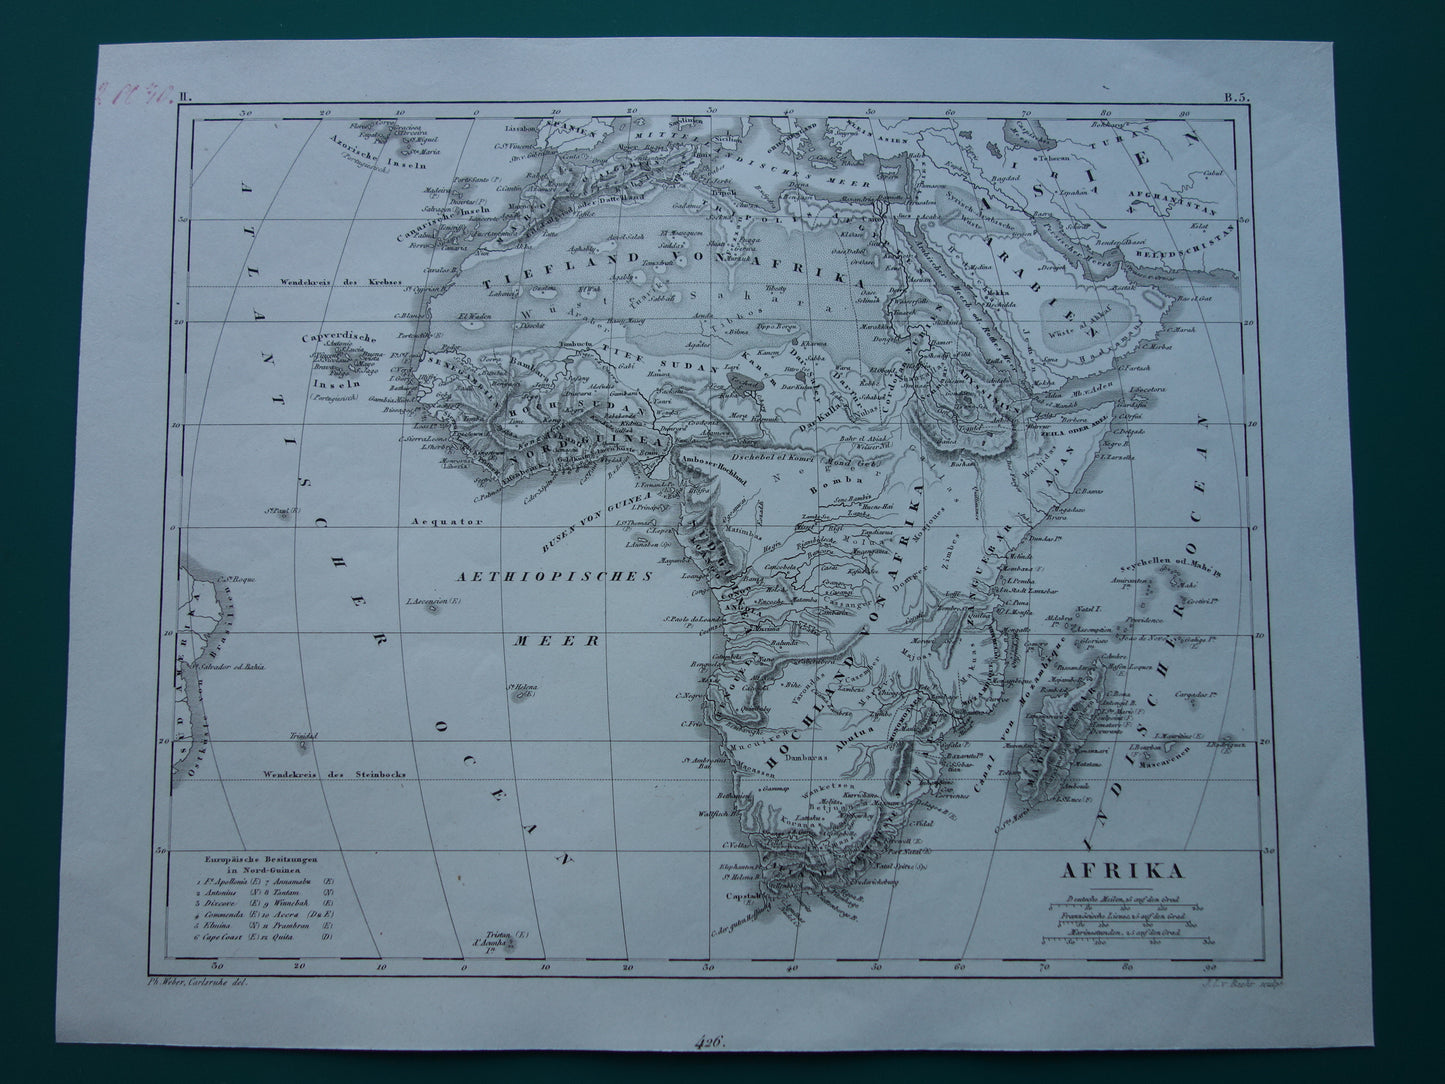 AFRIKA antieke kaart van Afrika 170+ jaar oude landkaart van continent uit 1849 - originele vintage historische kaarten